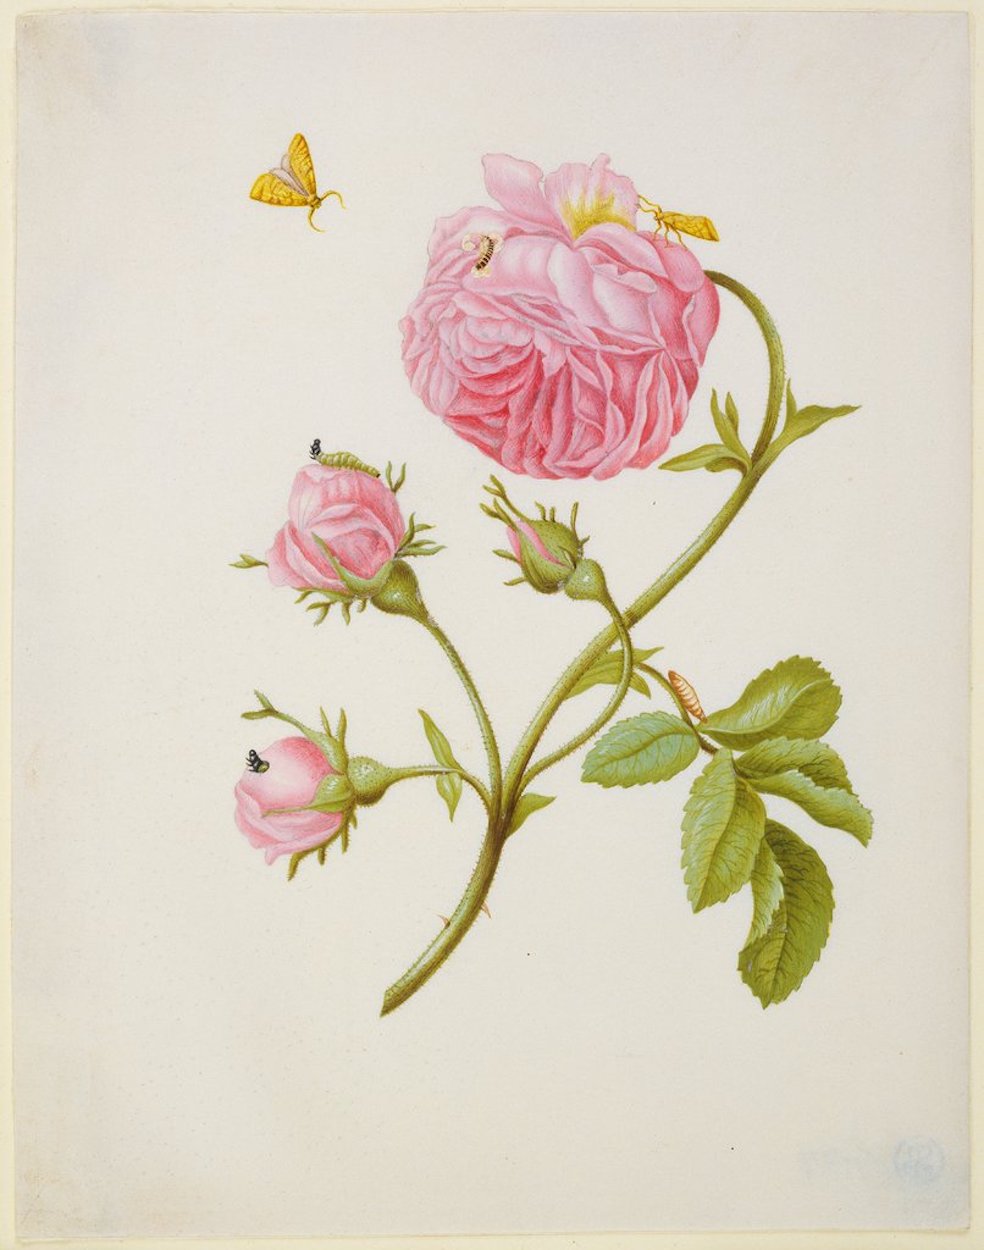 Rosa com Metamorfose de Rolo de Folha e uma Larva de Escaravelho by Maria Sibylla Merian - pós 1679 - 18.8 x 14.6 cm 